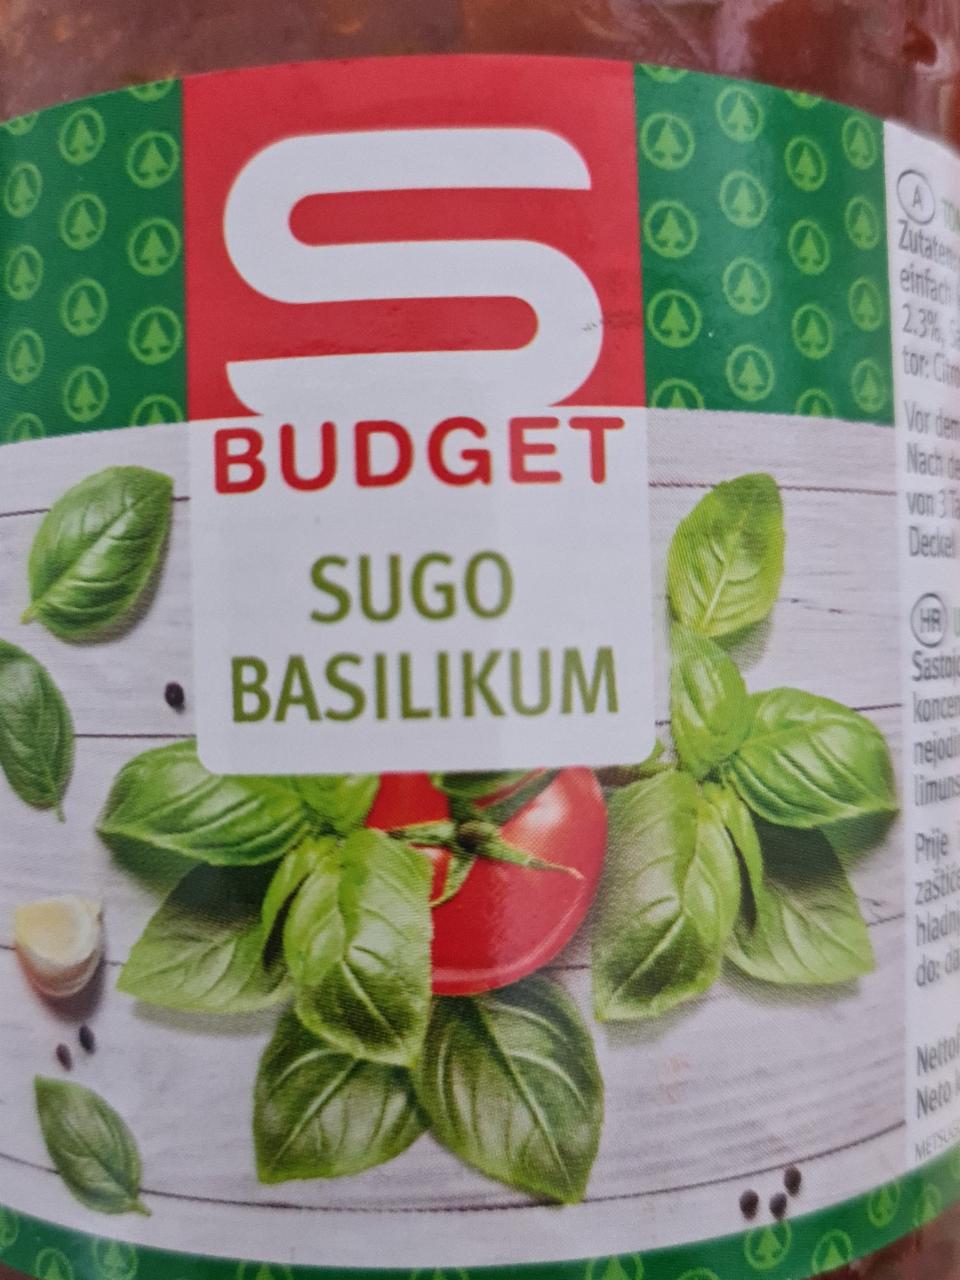 Fotografie - Sugo Basilikum S Budget